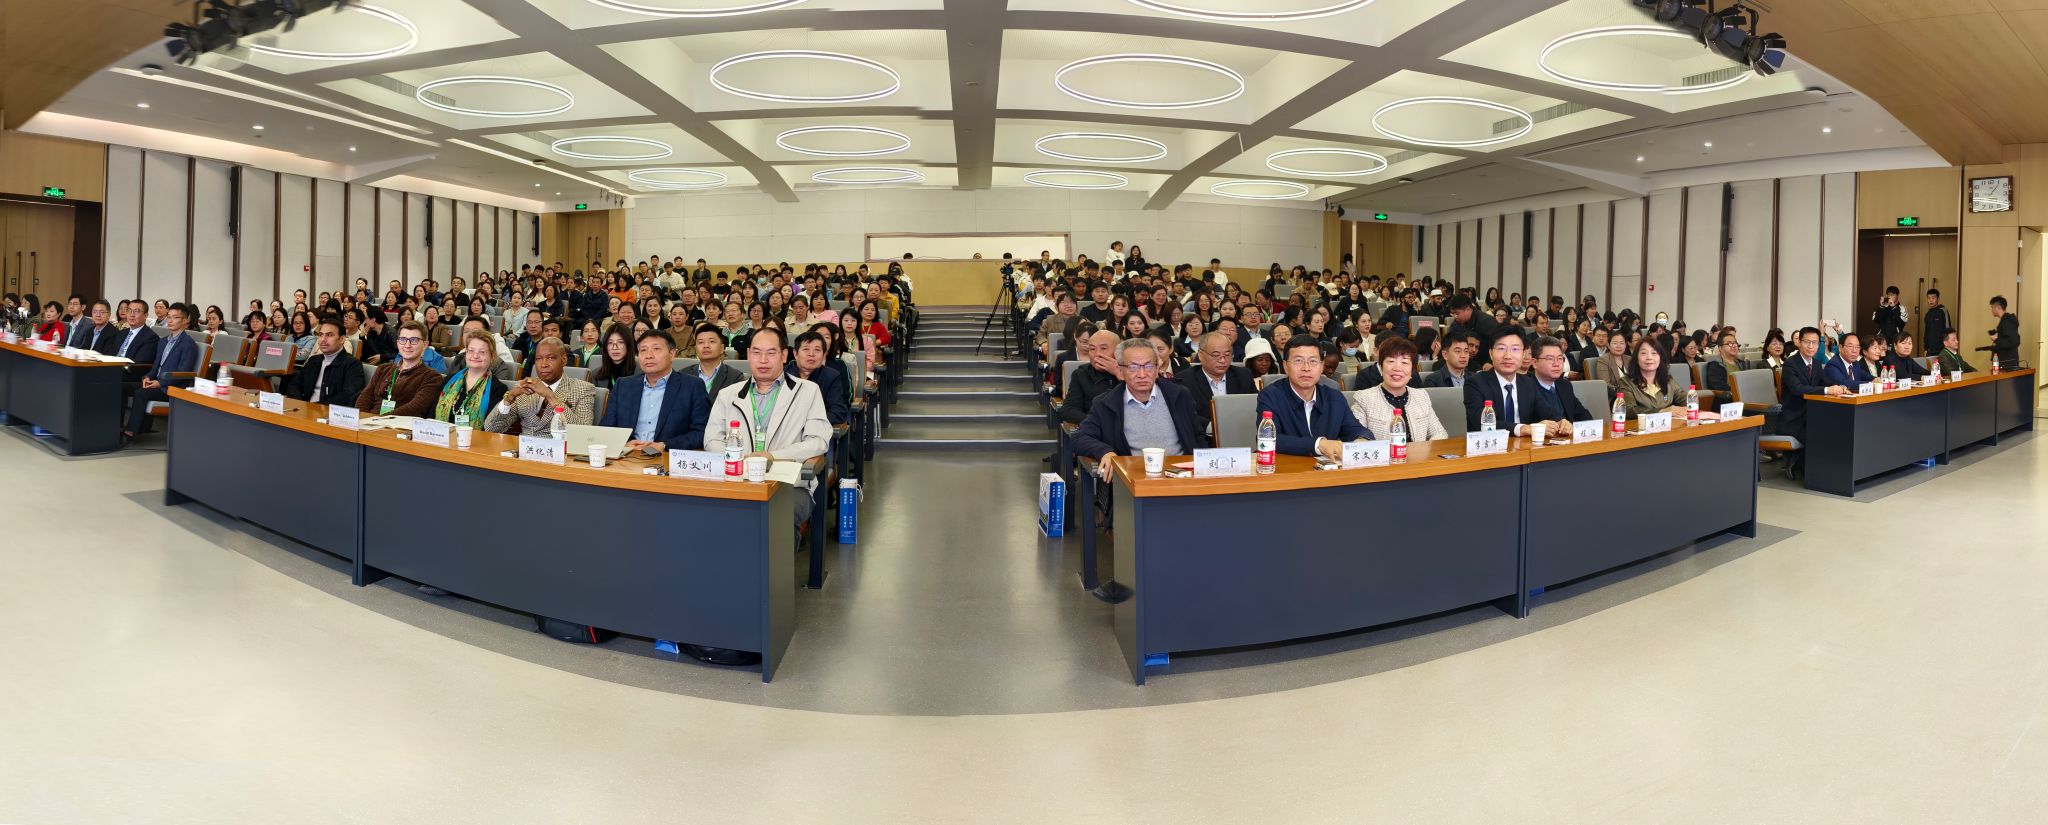 西安工业大学举办首届“高等教育通识课程教学改革与创新研究”国际会议